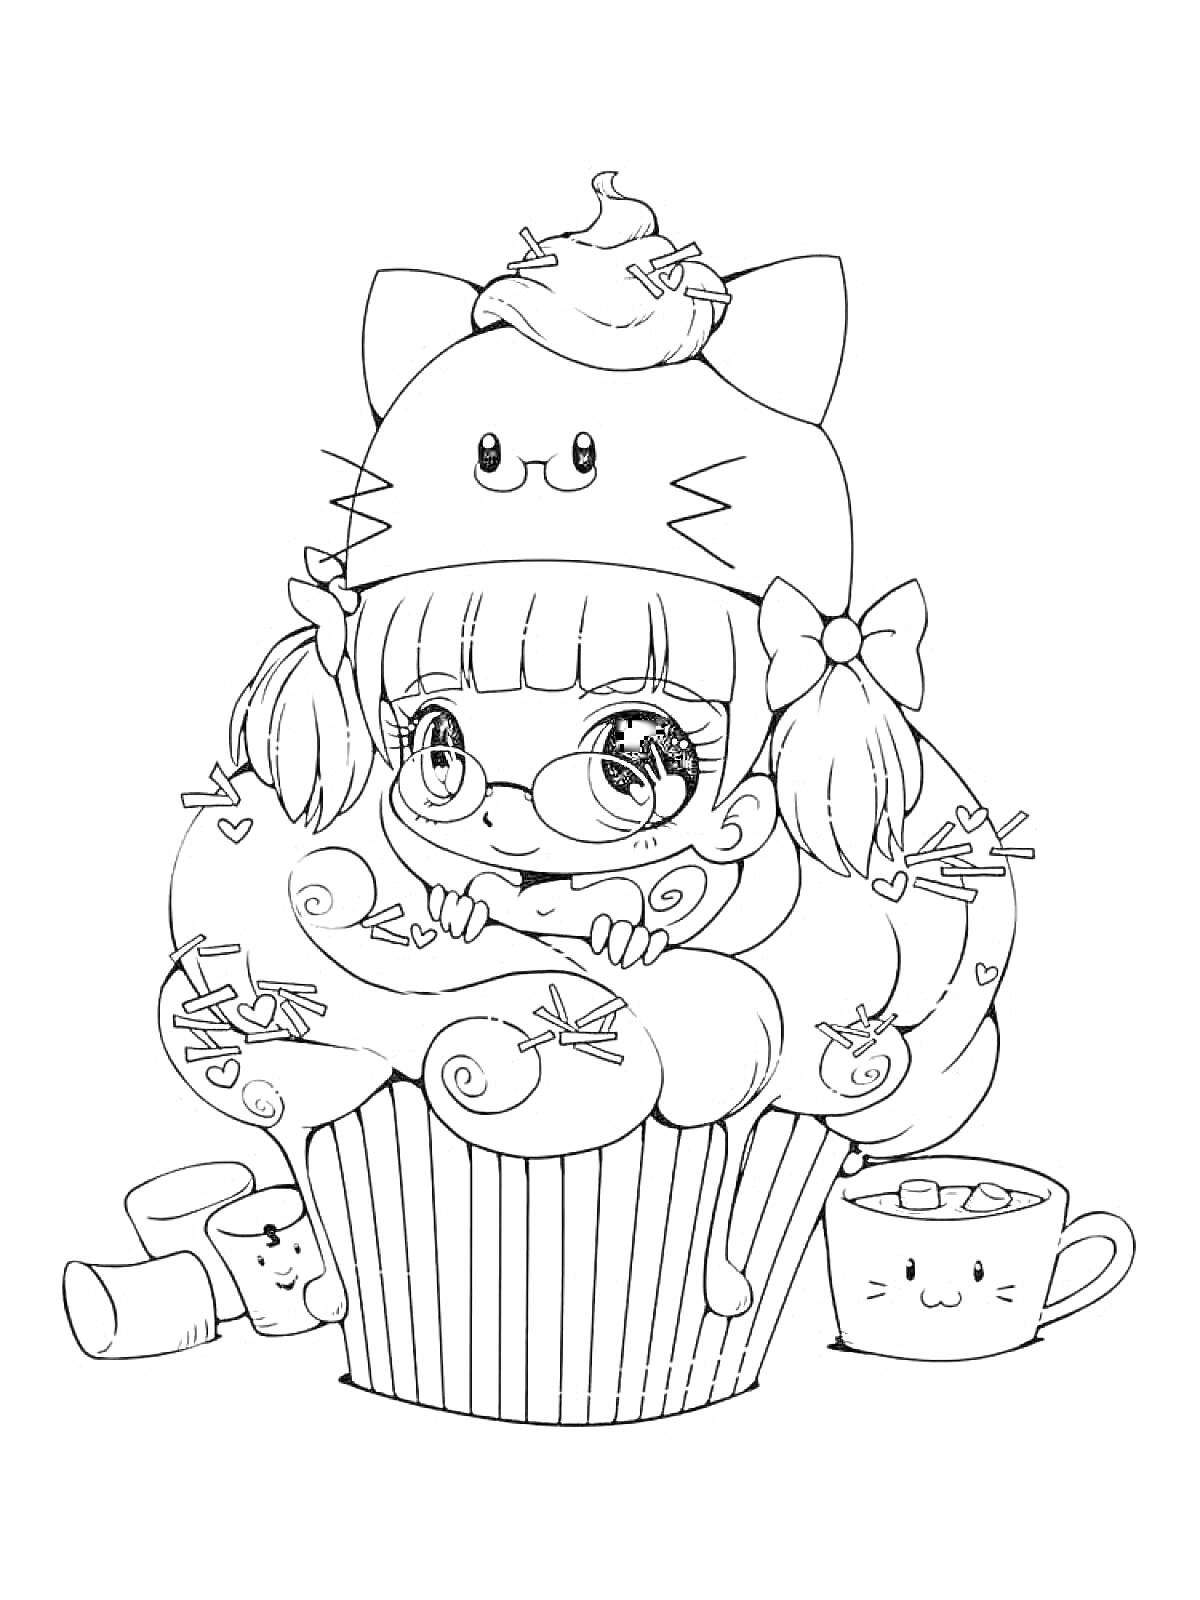 Девочка с косичками в шапке с ушками на большом капкейке, окружённая кавайными чайной чашкой и креманкой